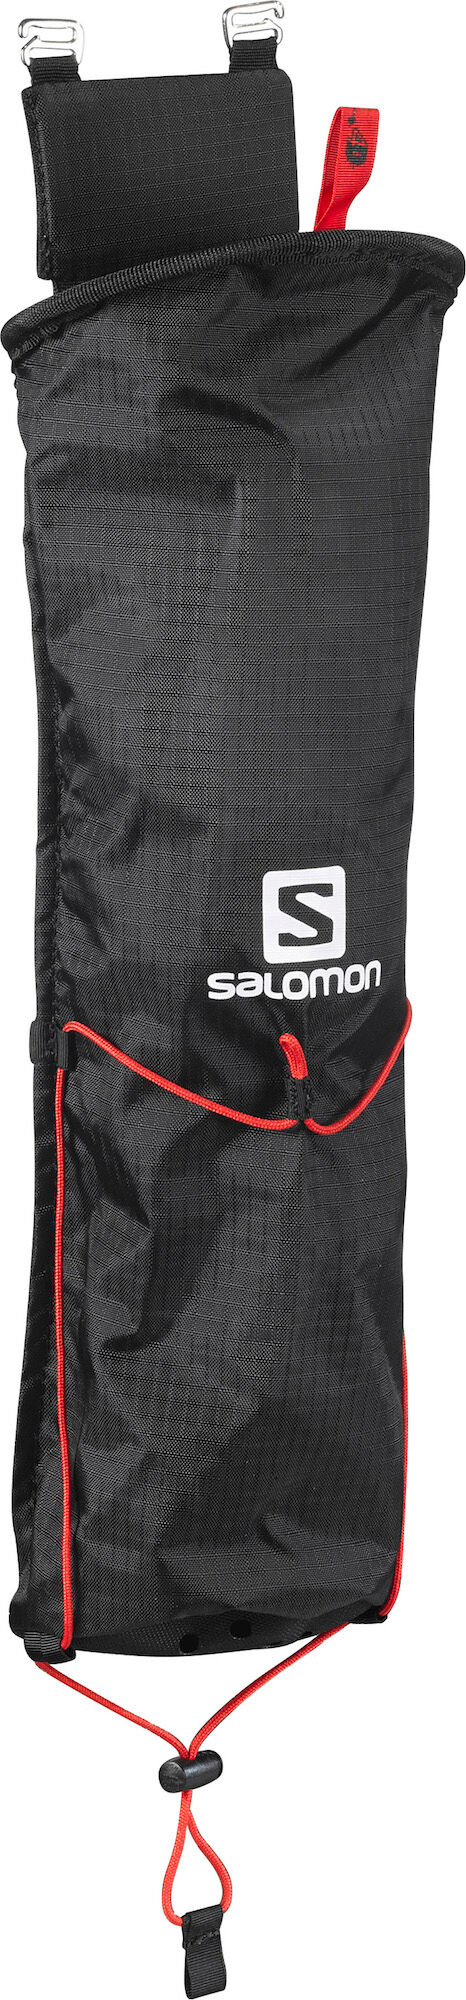 Salomon - Custom Quiver - Trekking pad